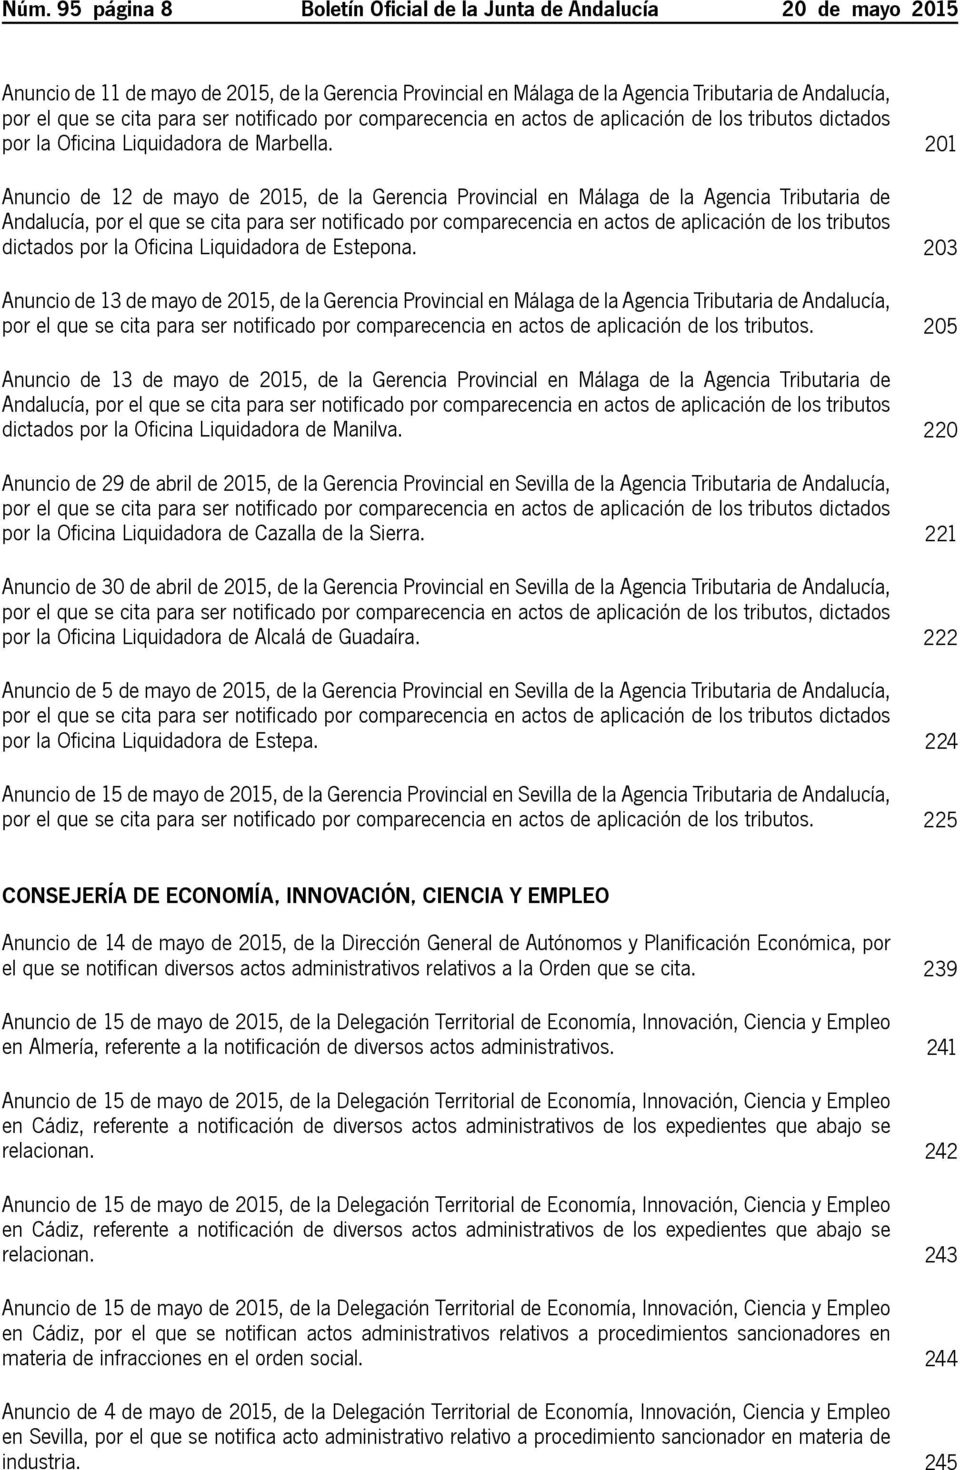 201 Anuncio de 12 de mayo de 2015, de la Gerencia Provincial en Málaga de la Agencia Tributaria de Andalucía, por el que se cita para ser notificado por comparecencia en actos de aplicación de los